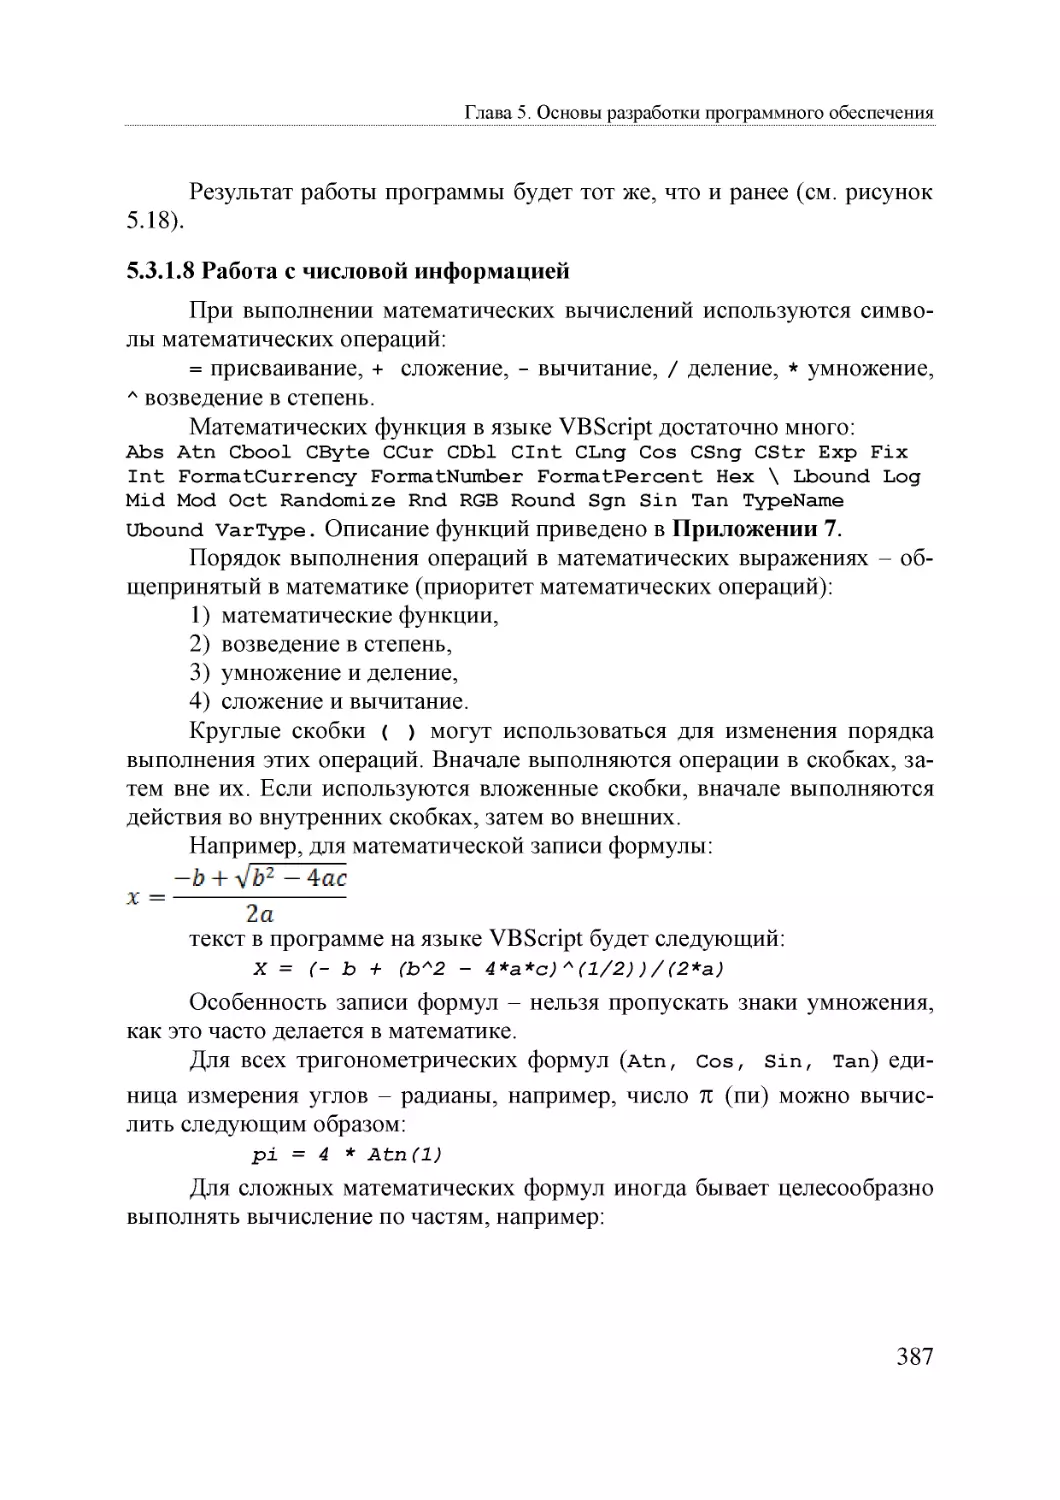 Informatika_Uchebnik_dlya_vuzov_2010 387